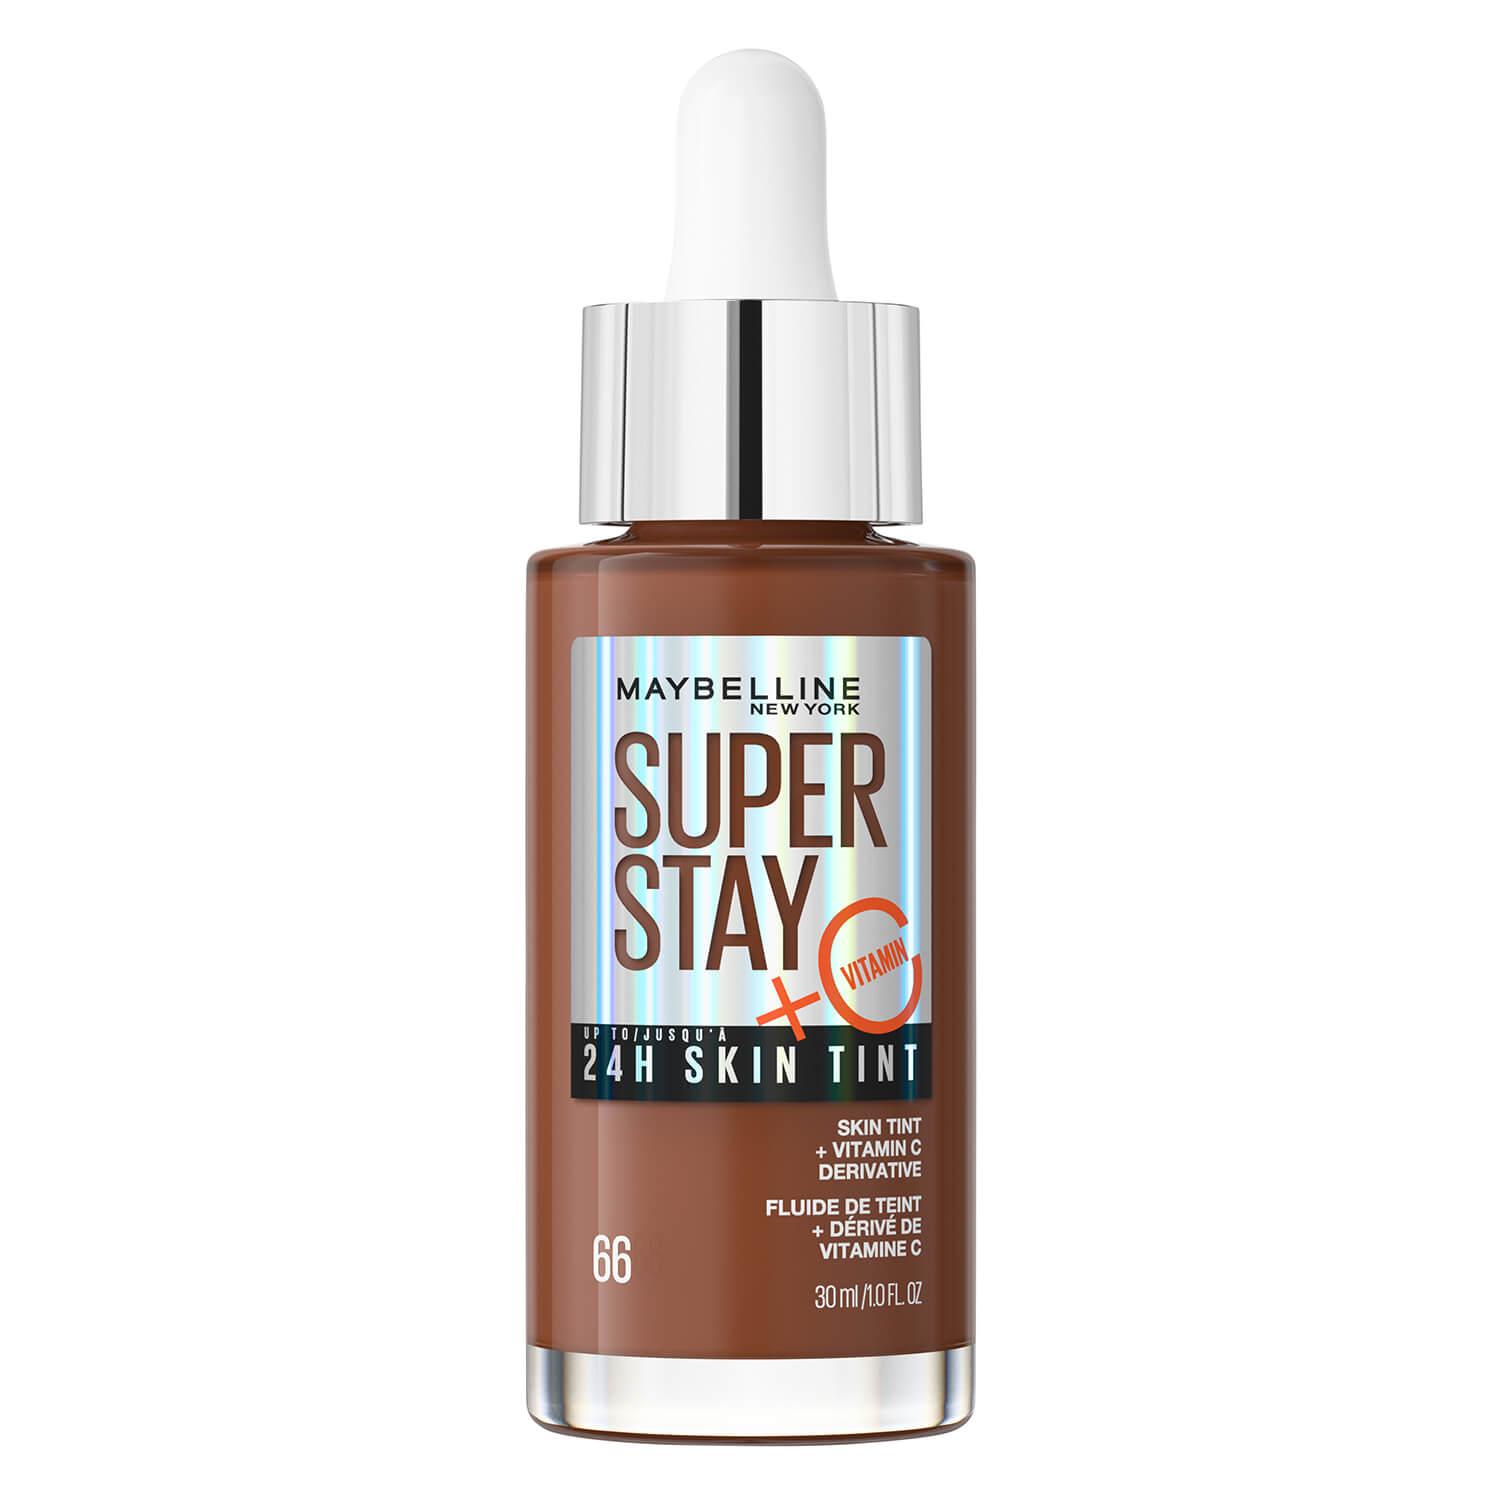 Maybelline NY Teint - Super Stay 24H Skin Tint Hazelnut 66